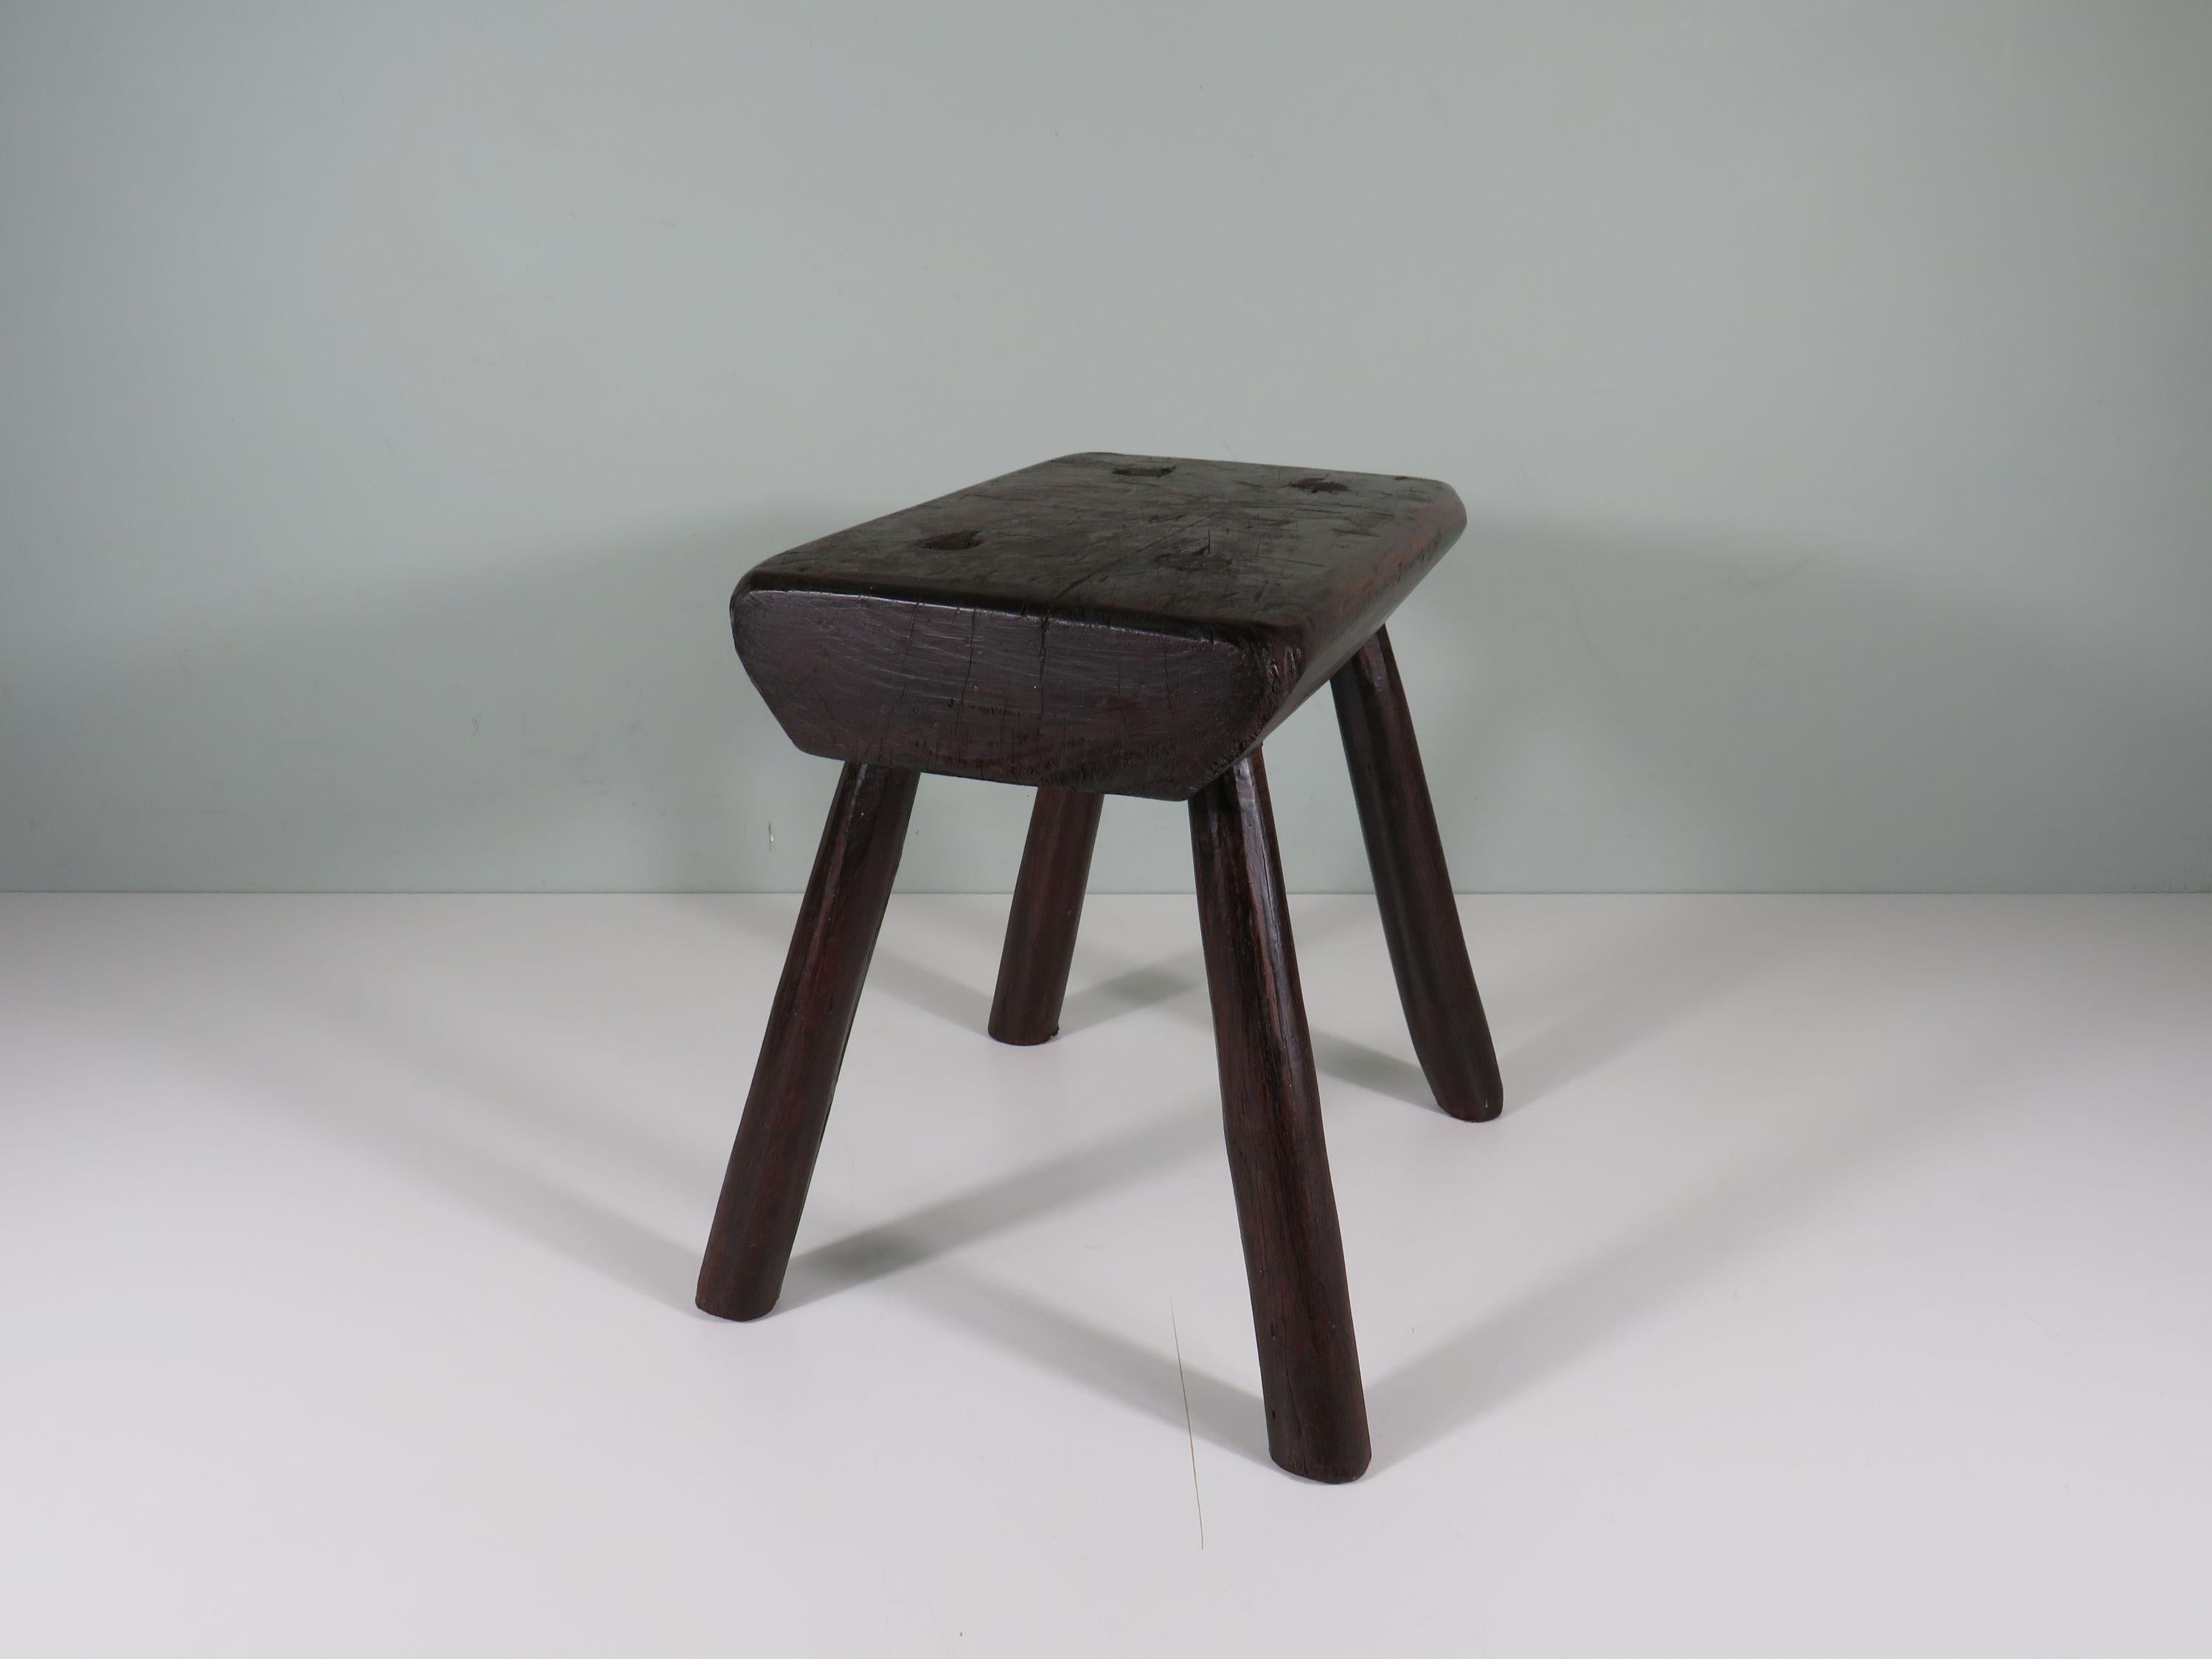 Handmade brutalist low oak stool, mid 20th century